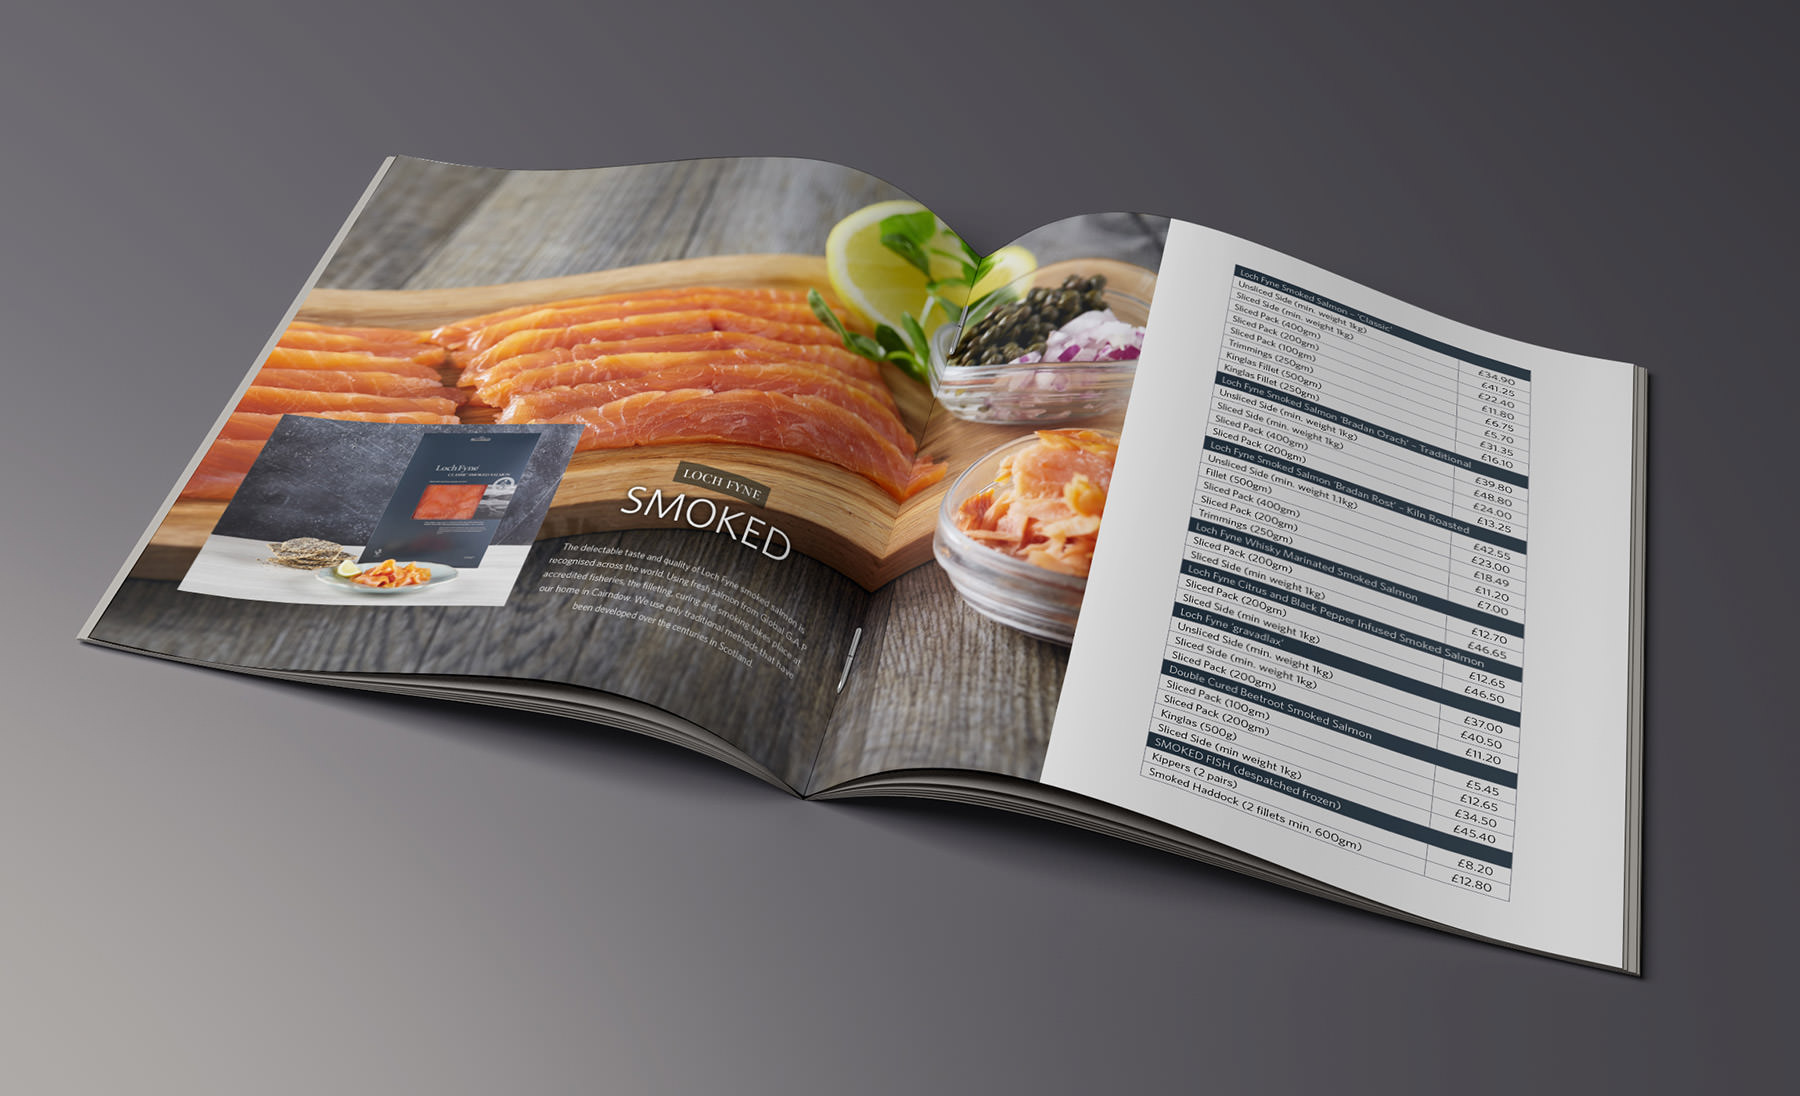 Loch Fyne Oysters brochure inside spread with salmon